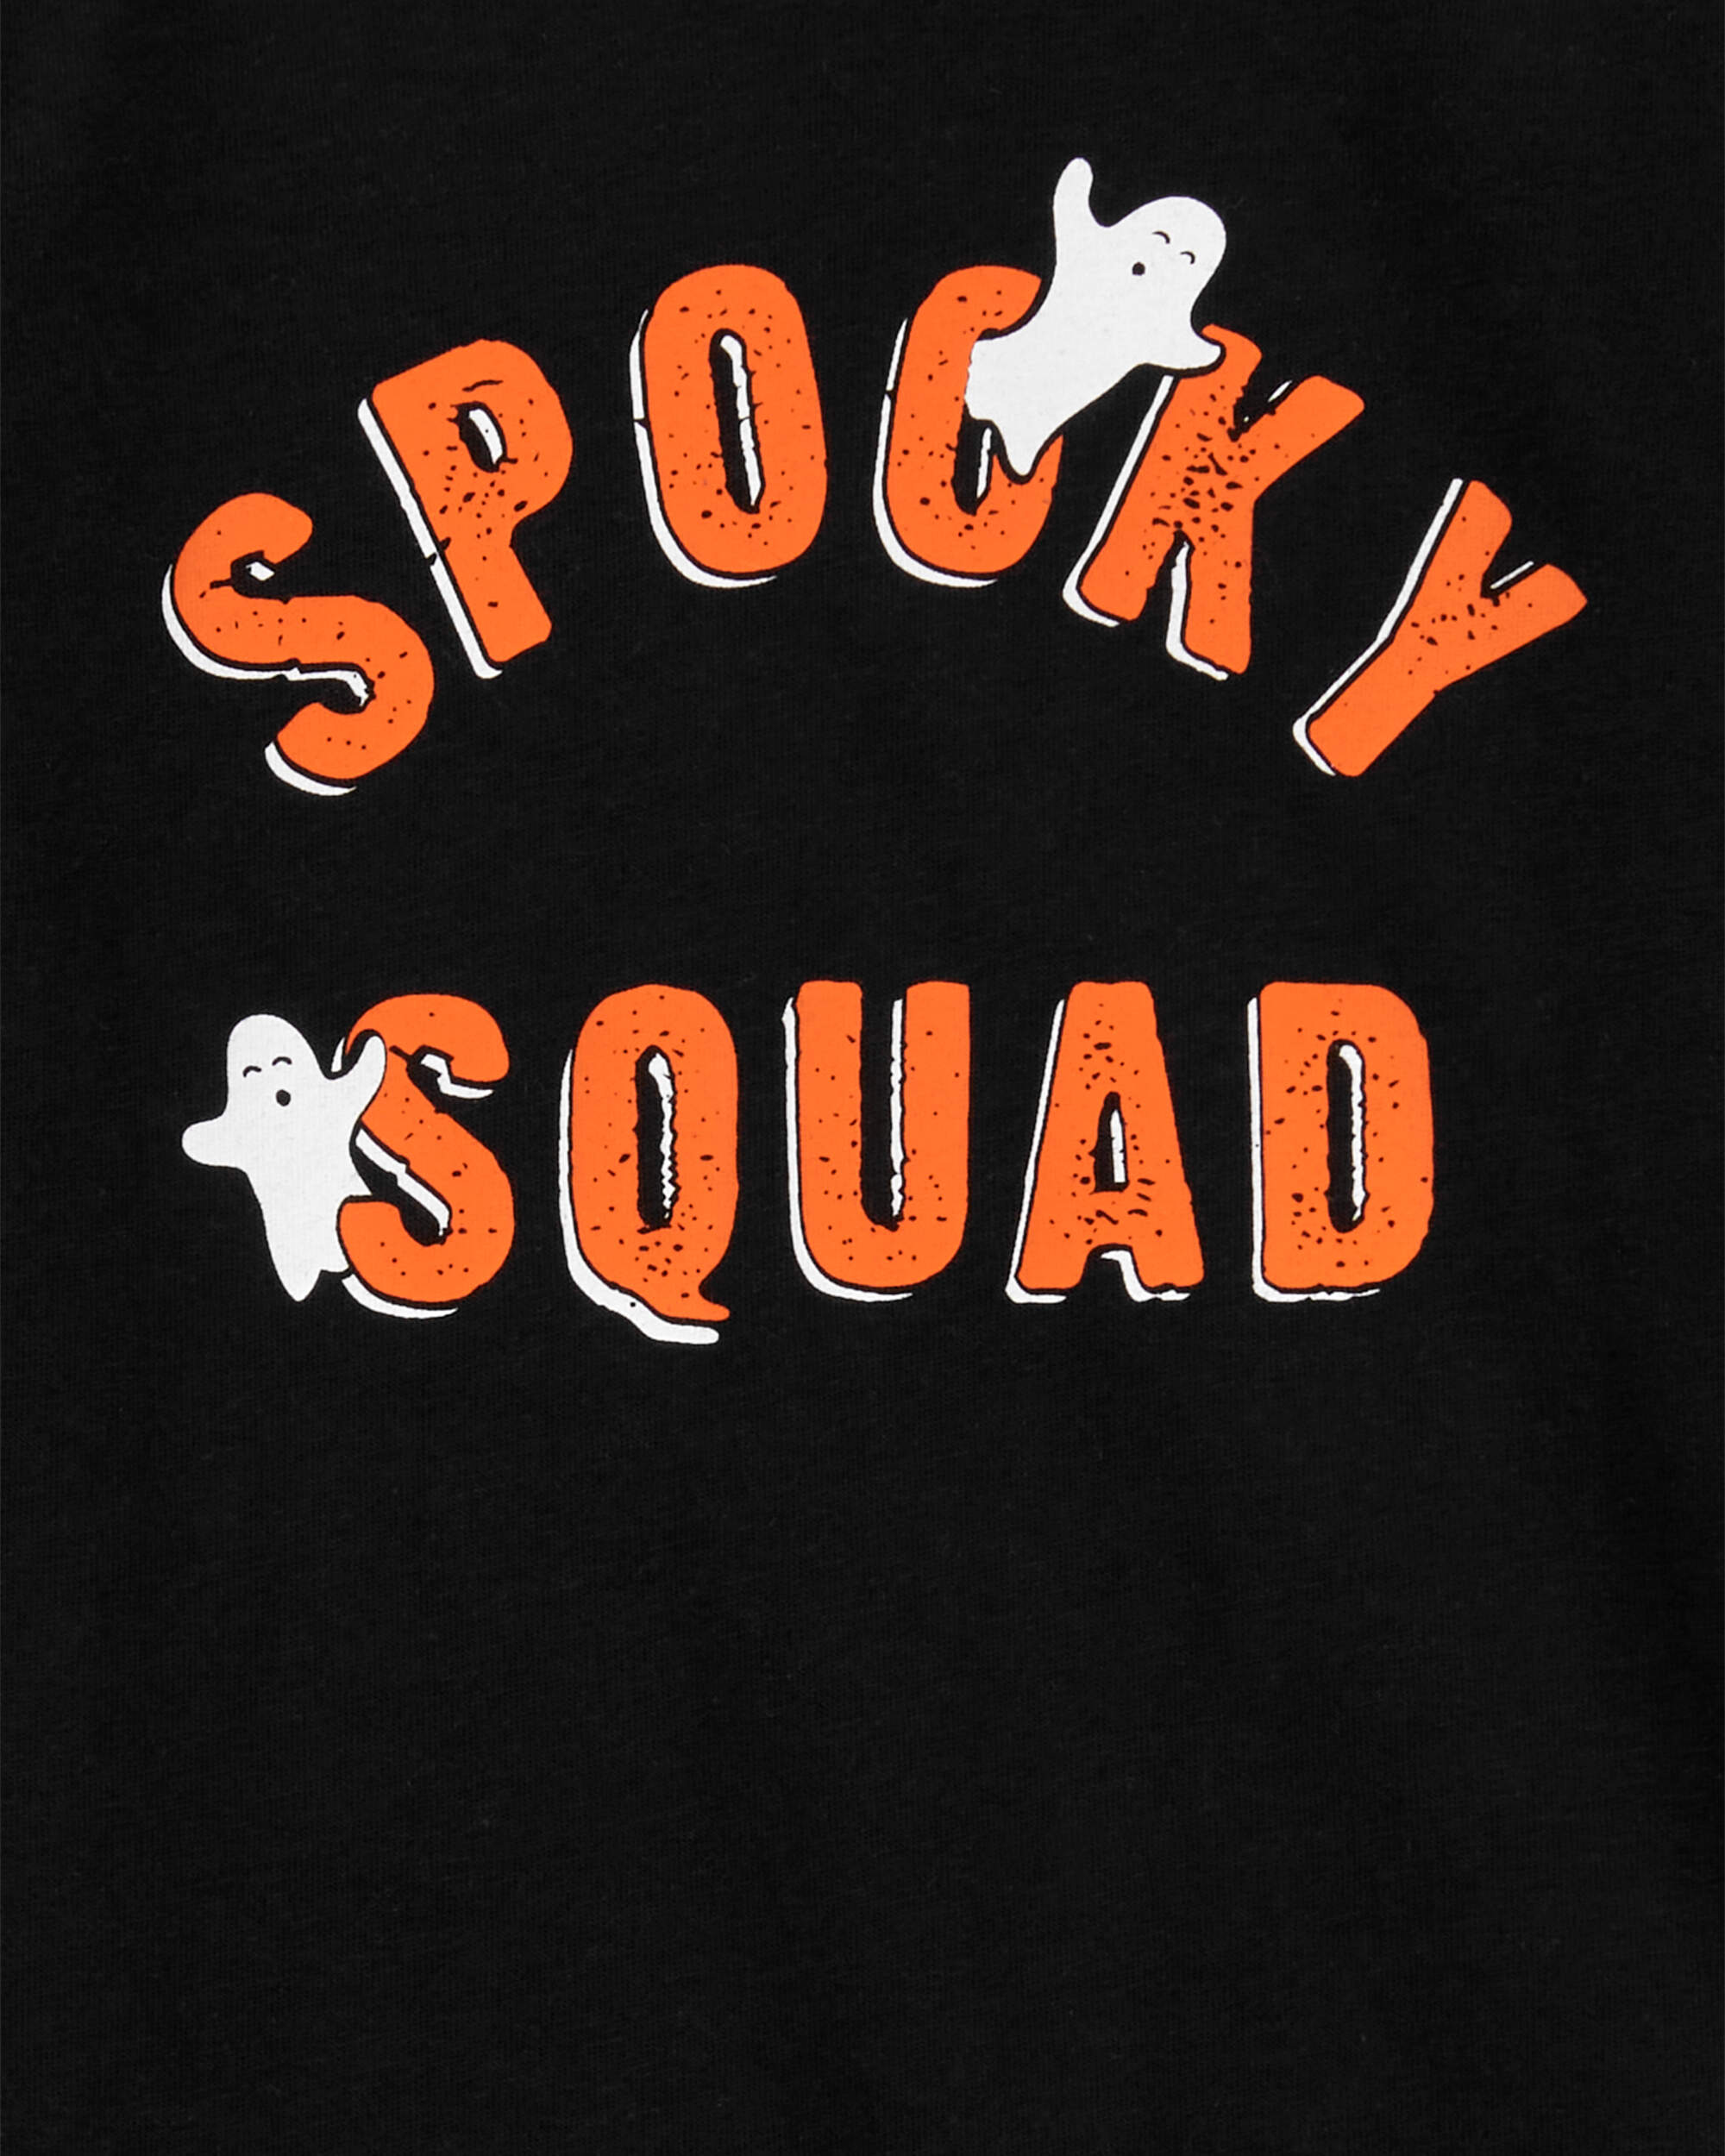 Baby Halloween Spooky Squad Bodysuit